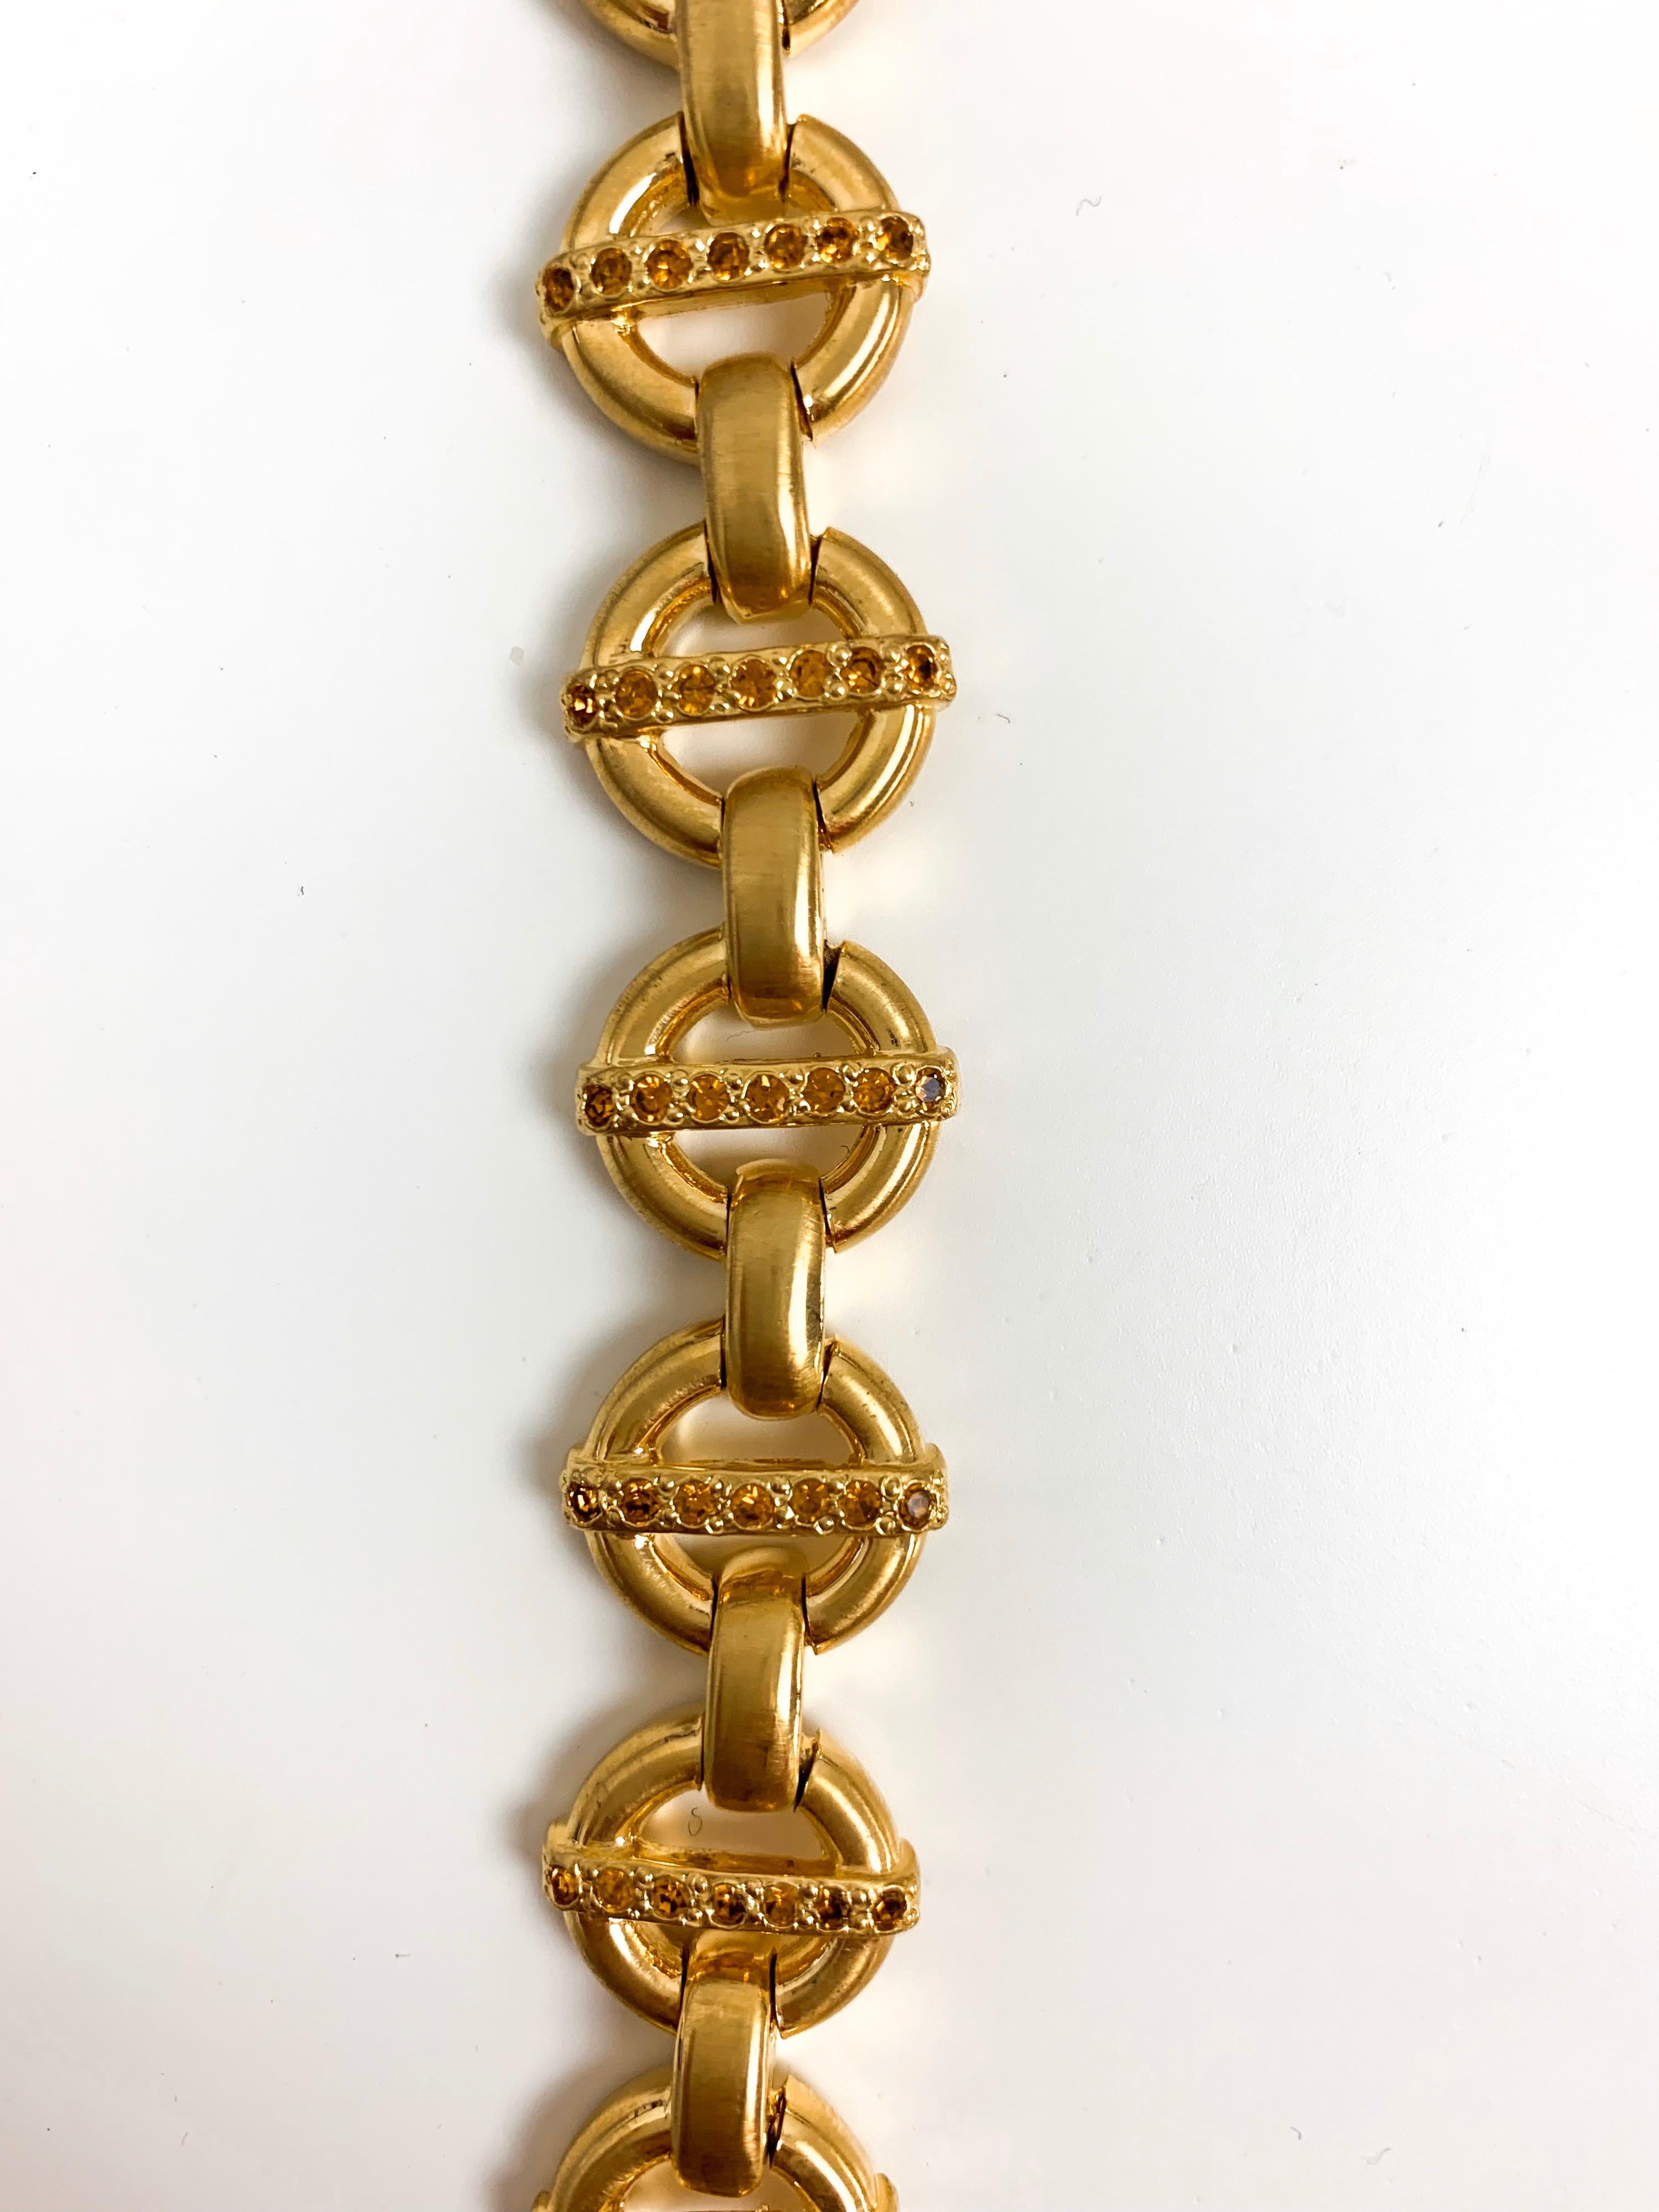 Diese seltene Gianni Versace Halskette ist ganz im Stil des Designers selbst. Die goldene Halskette aus den 1990er Jahren zeichnet sich durch eine schöne, kreisförmige, ineinandergreifende Kette mit orangefarbenen Kristallen aus. Dieses schlichte